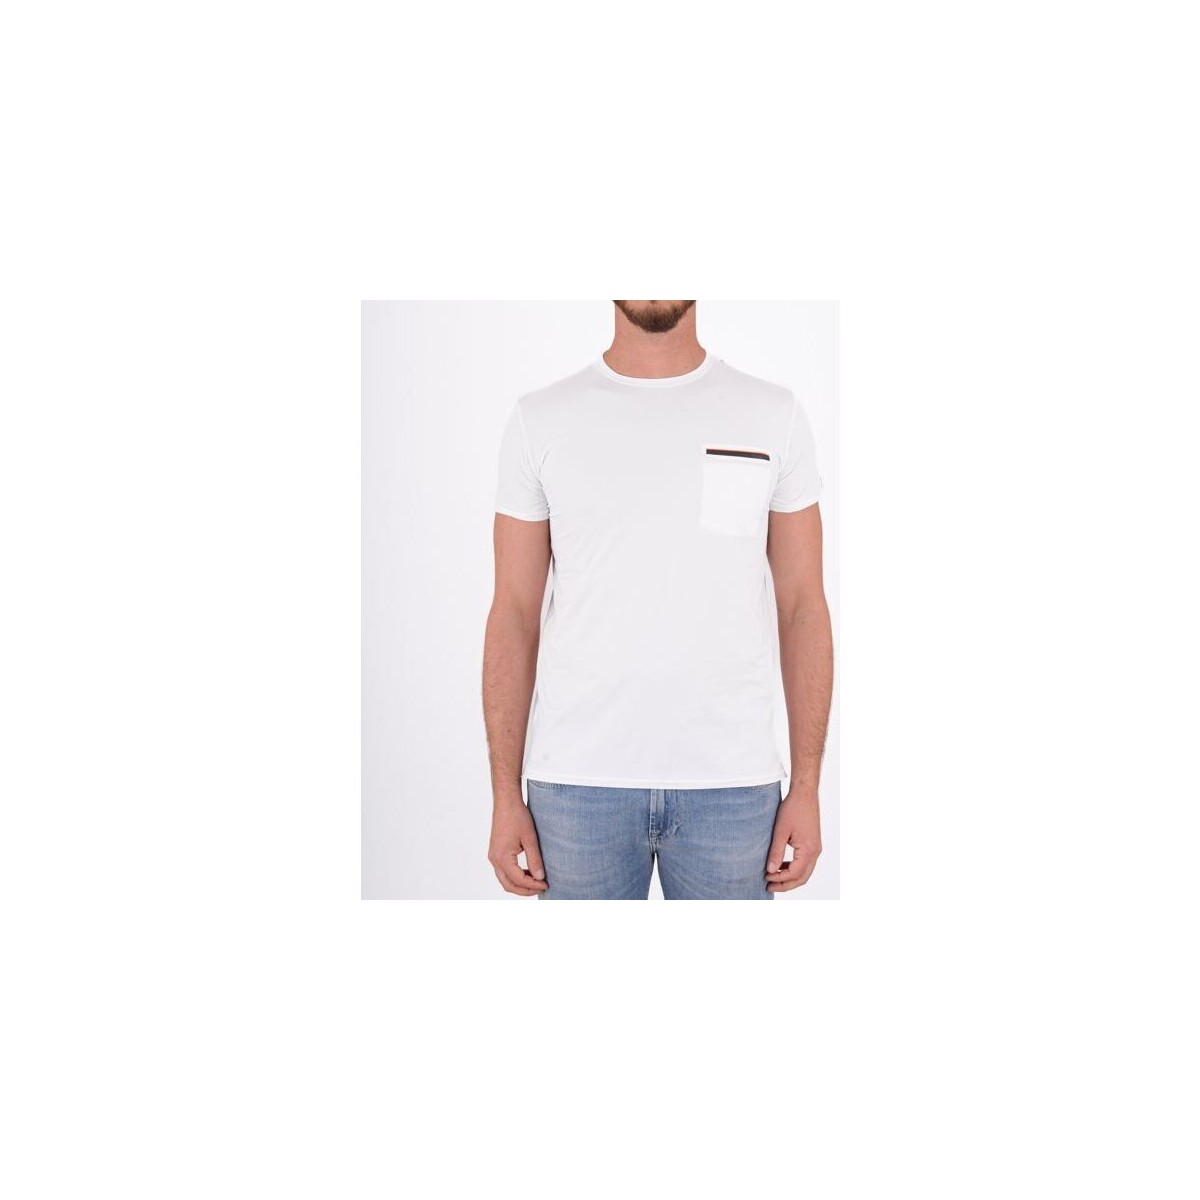 textil Hombre Tops y Camisetas Rrd - Roberto Ricci Designs S23161 Blanco